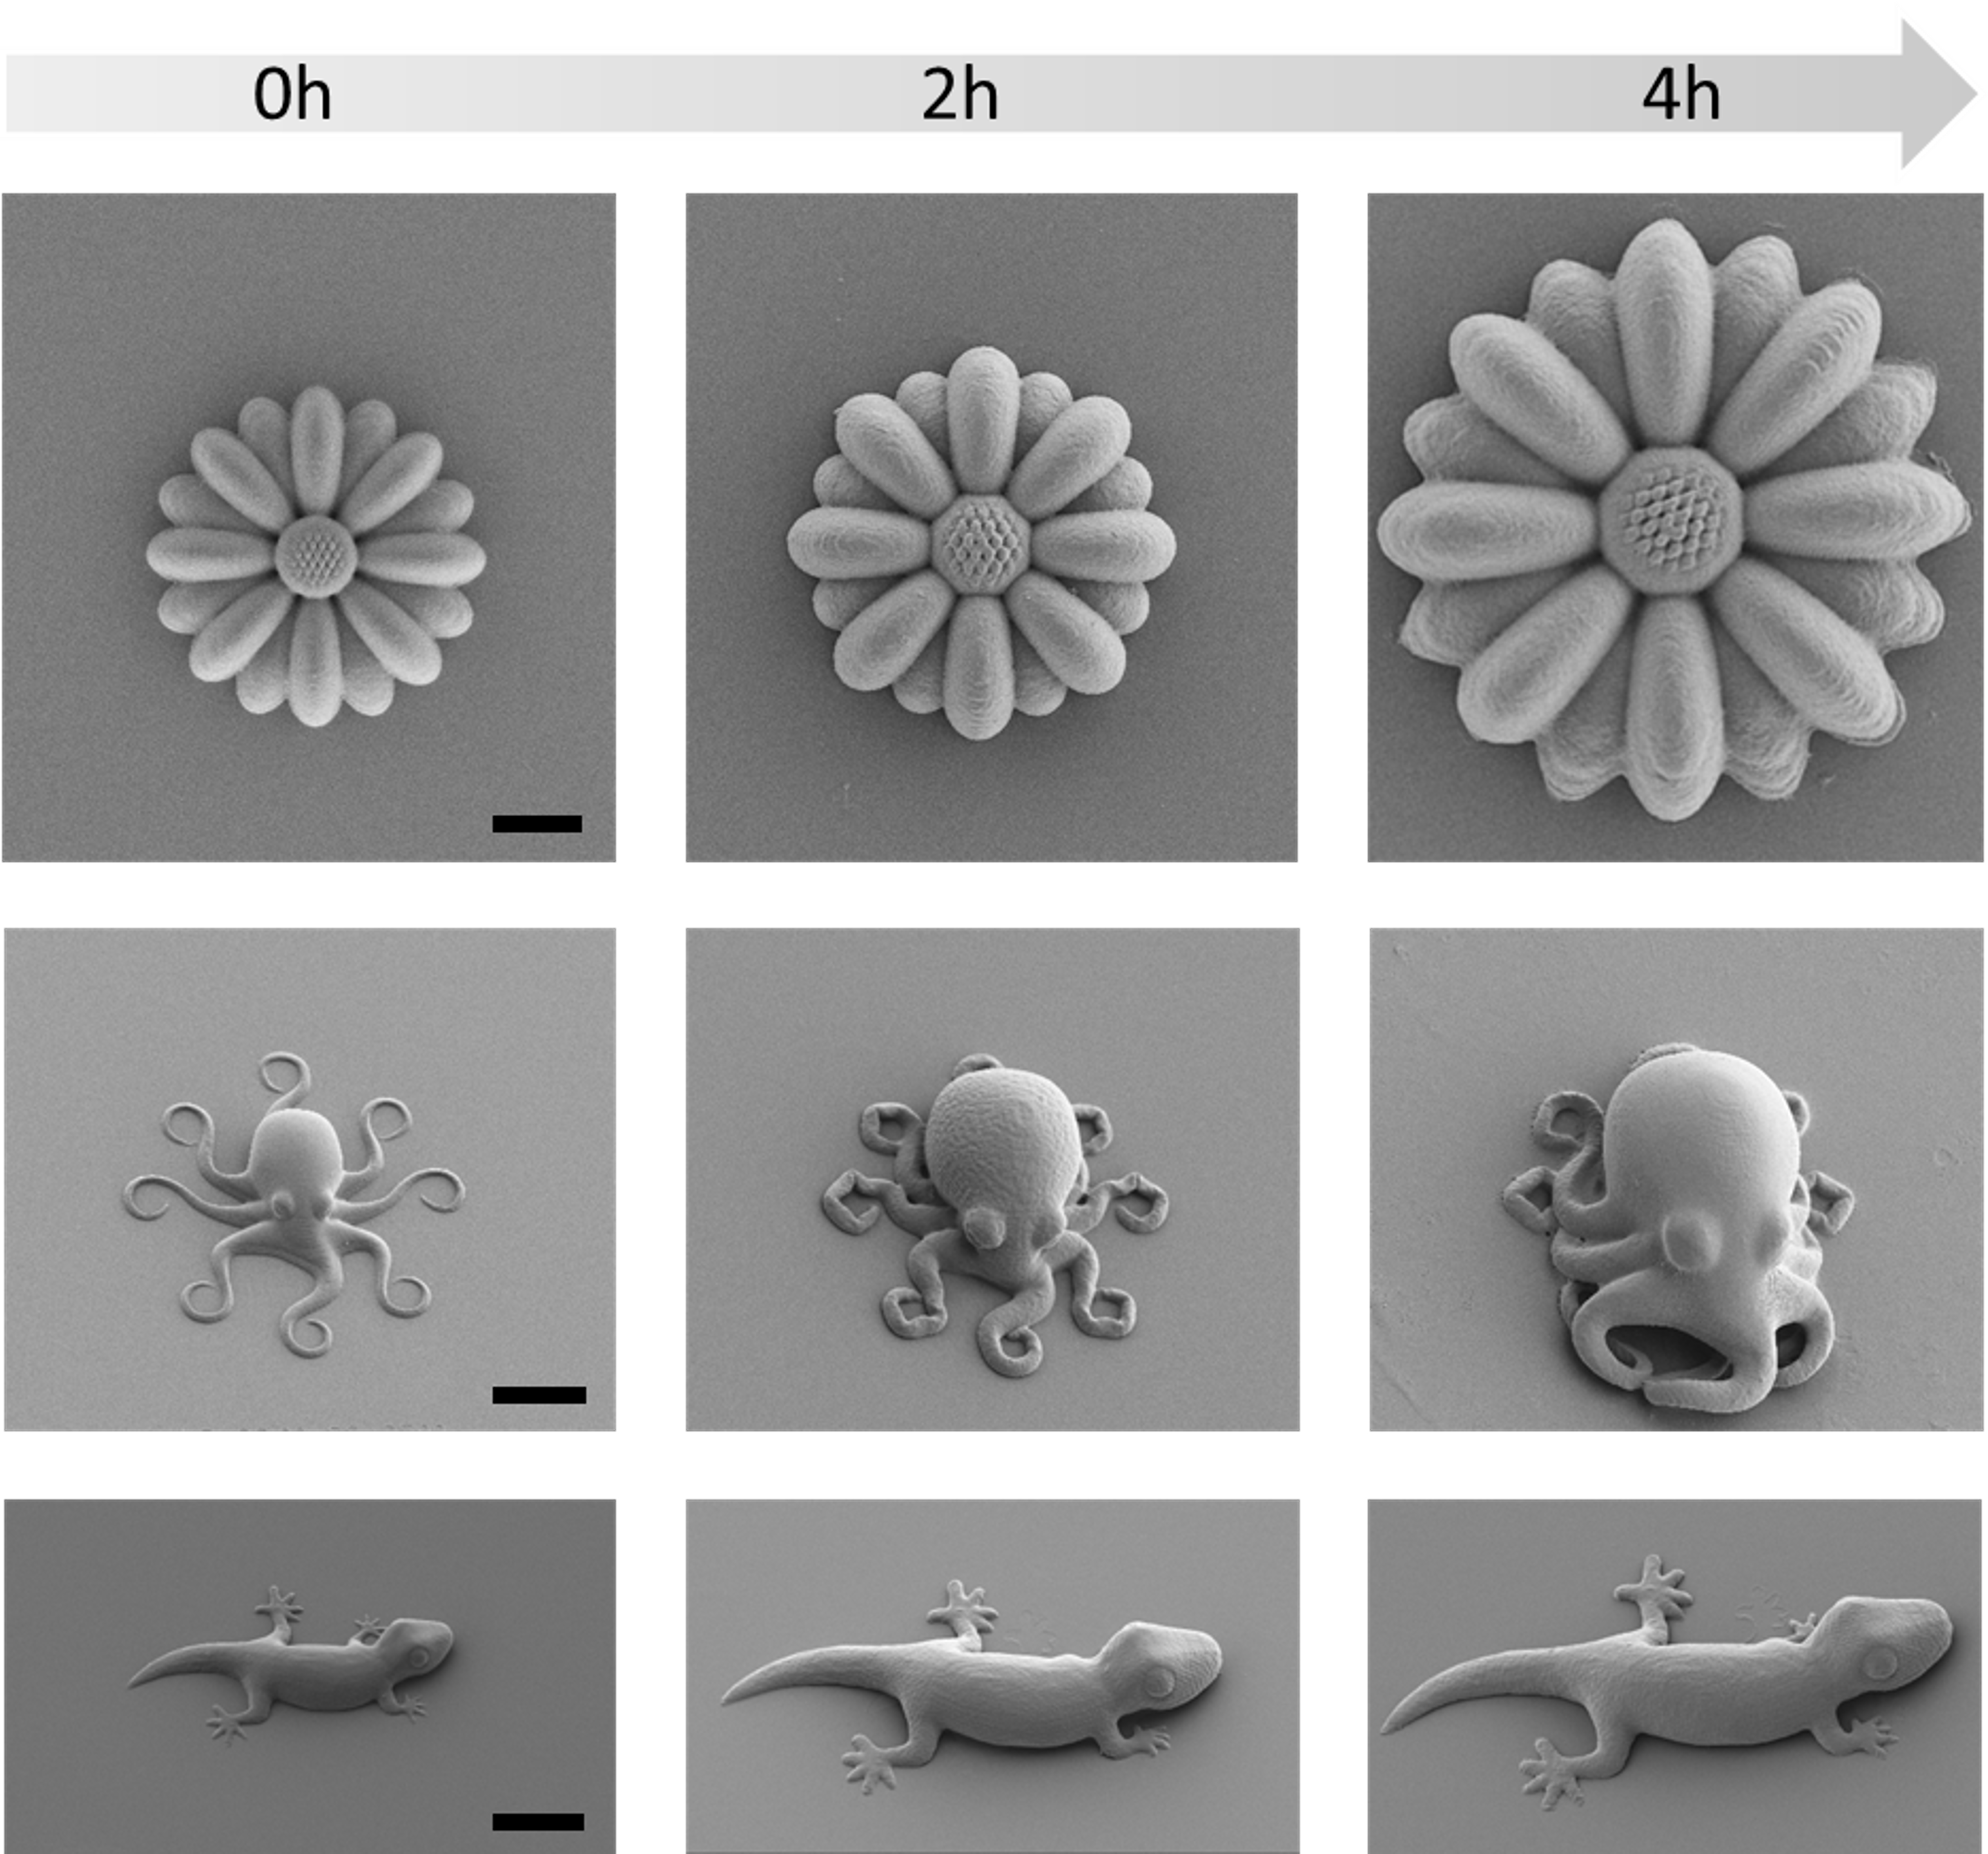 Schwarz-weiße mikroskopische Aufnahmen der gedruckten Objekte und ihrer Veränderung in insgesamt 4 Stunden, jeweils im Abstand von 2 Stunden. 1.Reihe: Sonnenblume, 2. Reihe: Krake und 3. Reihe: Gecko.